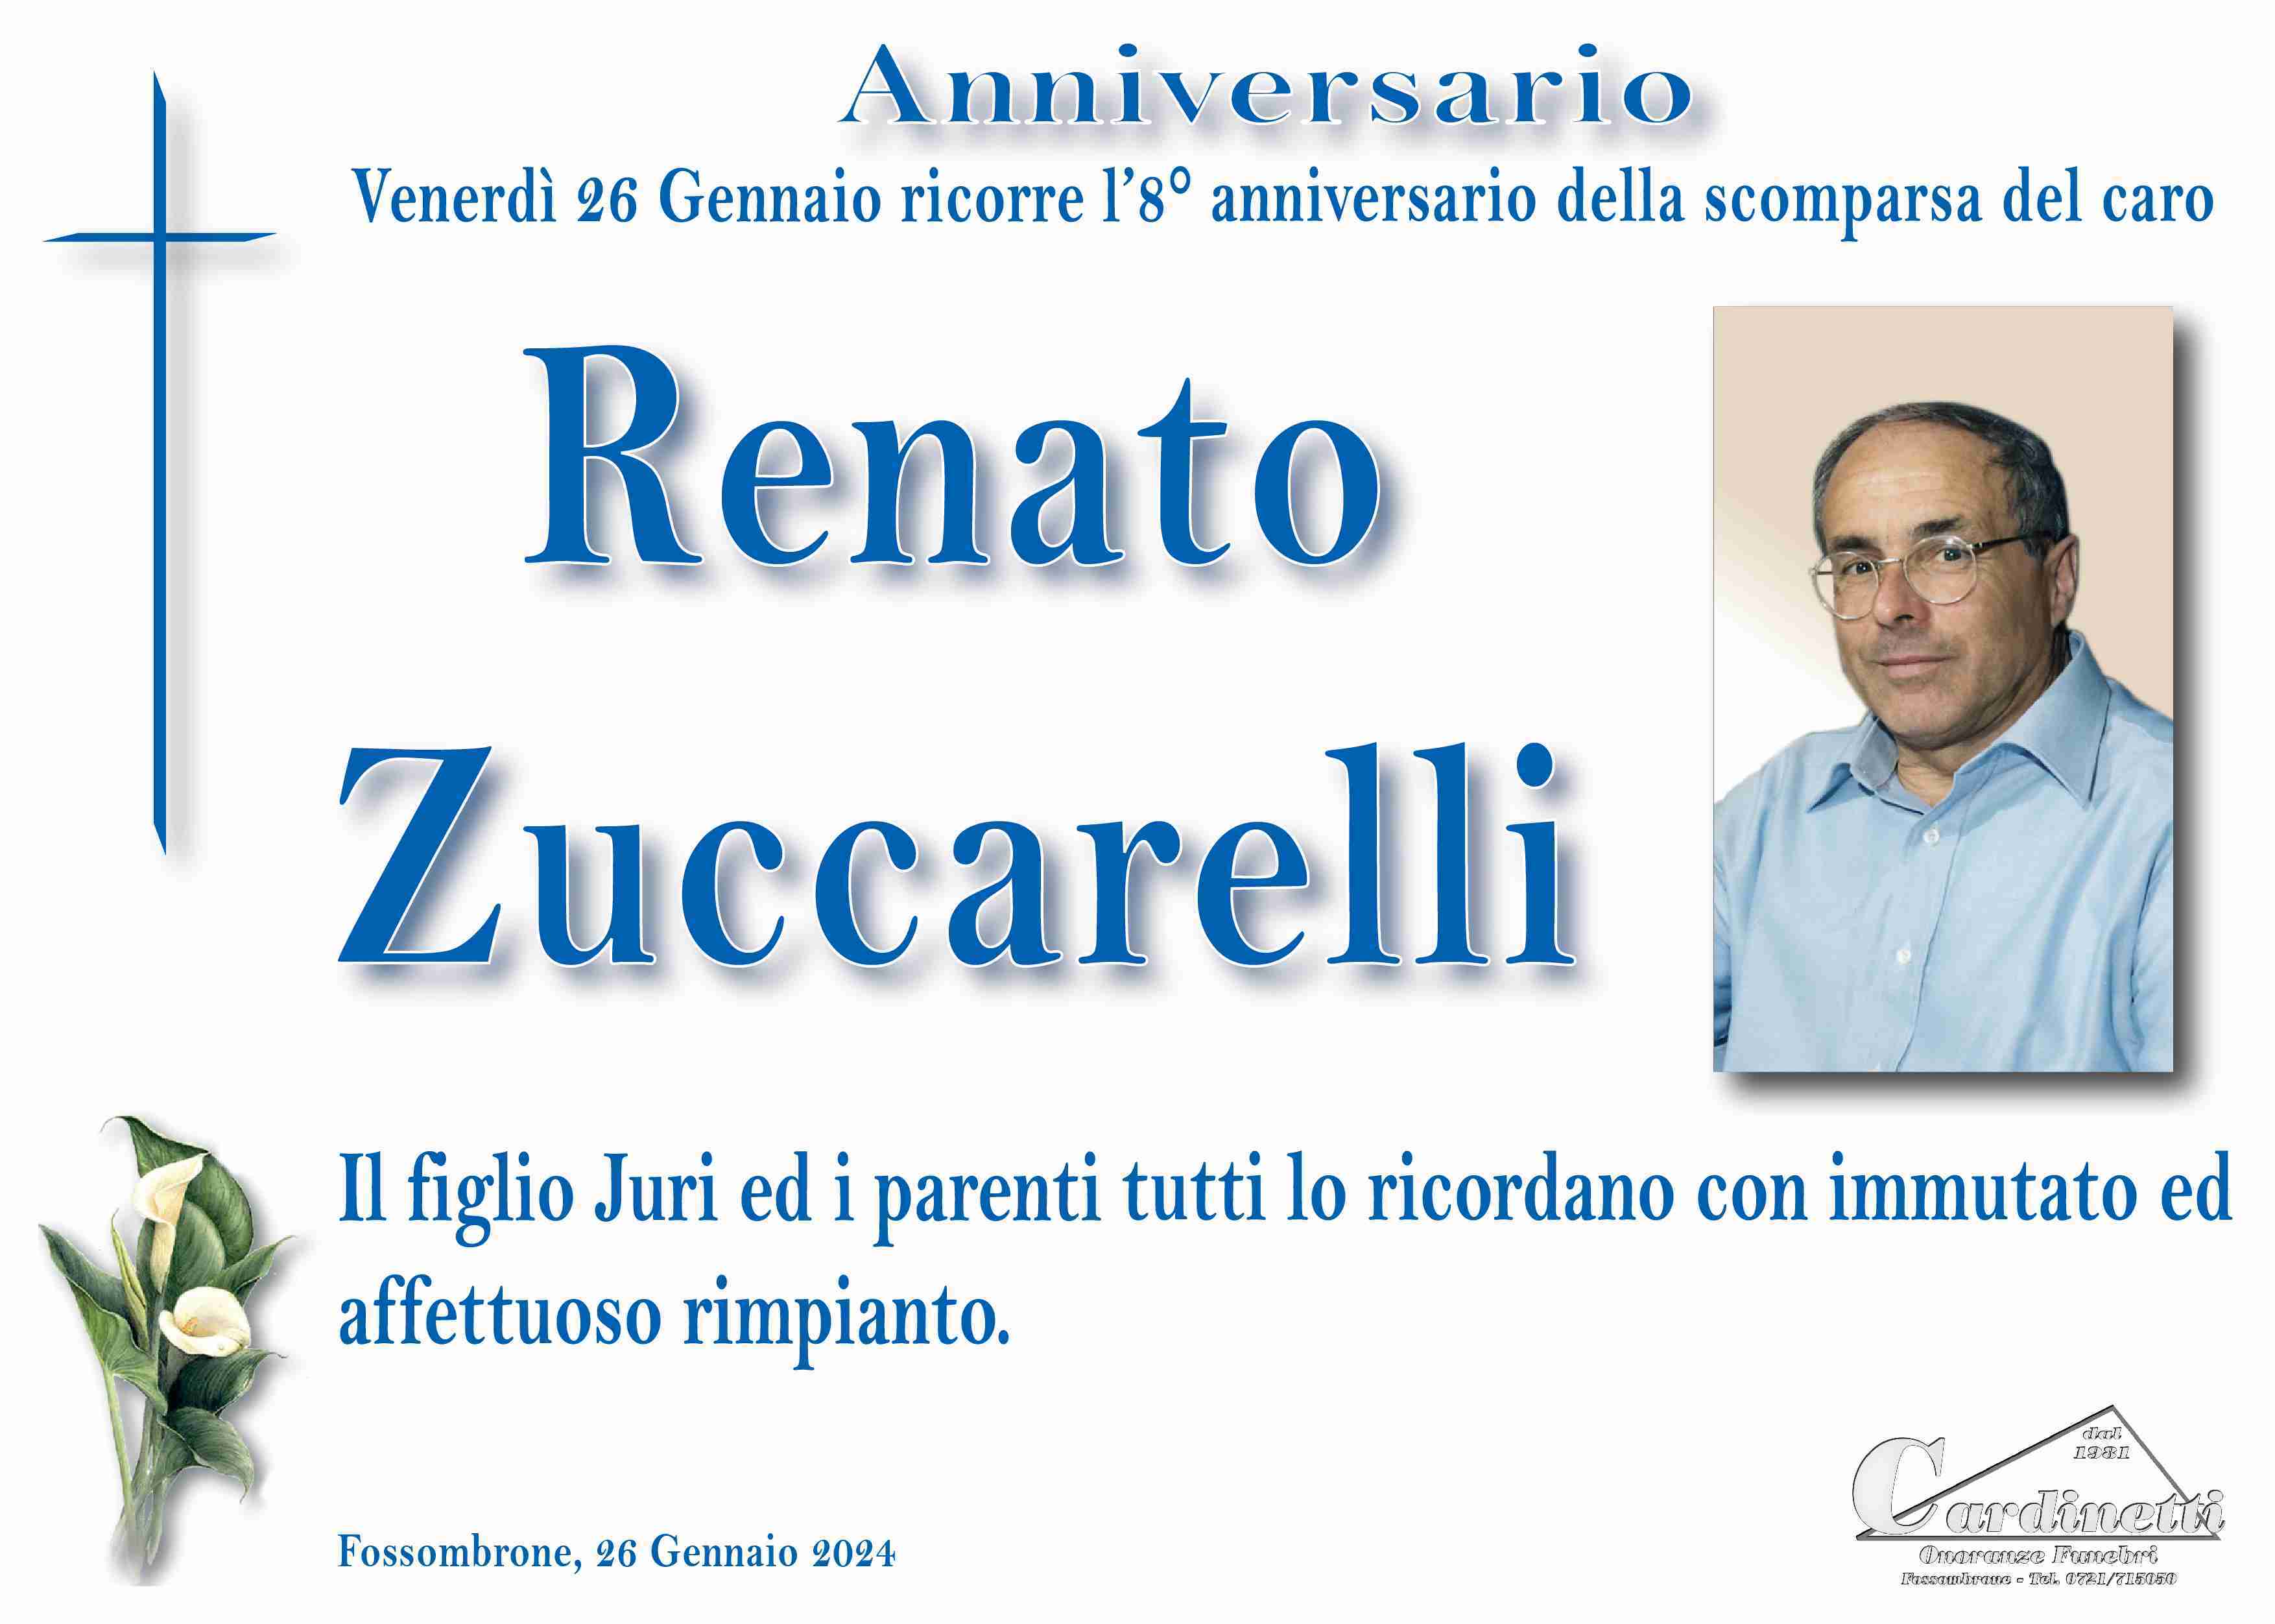 Renato Zuccarelli